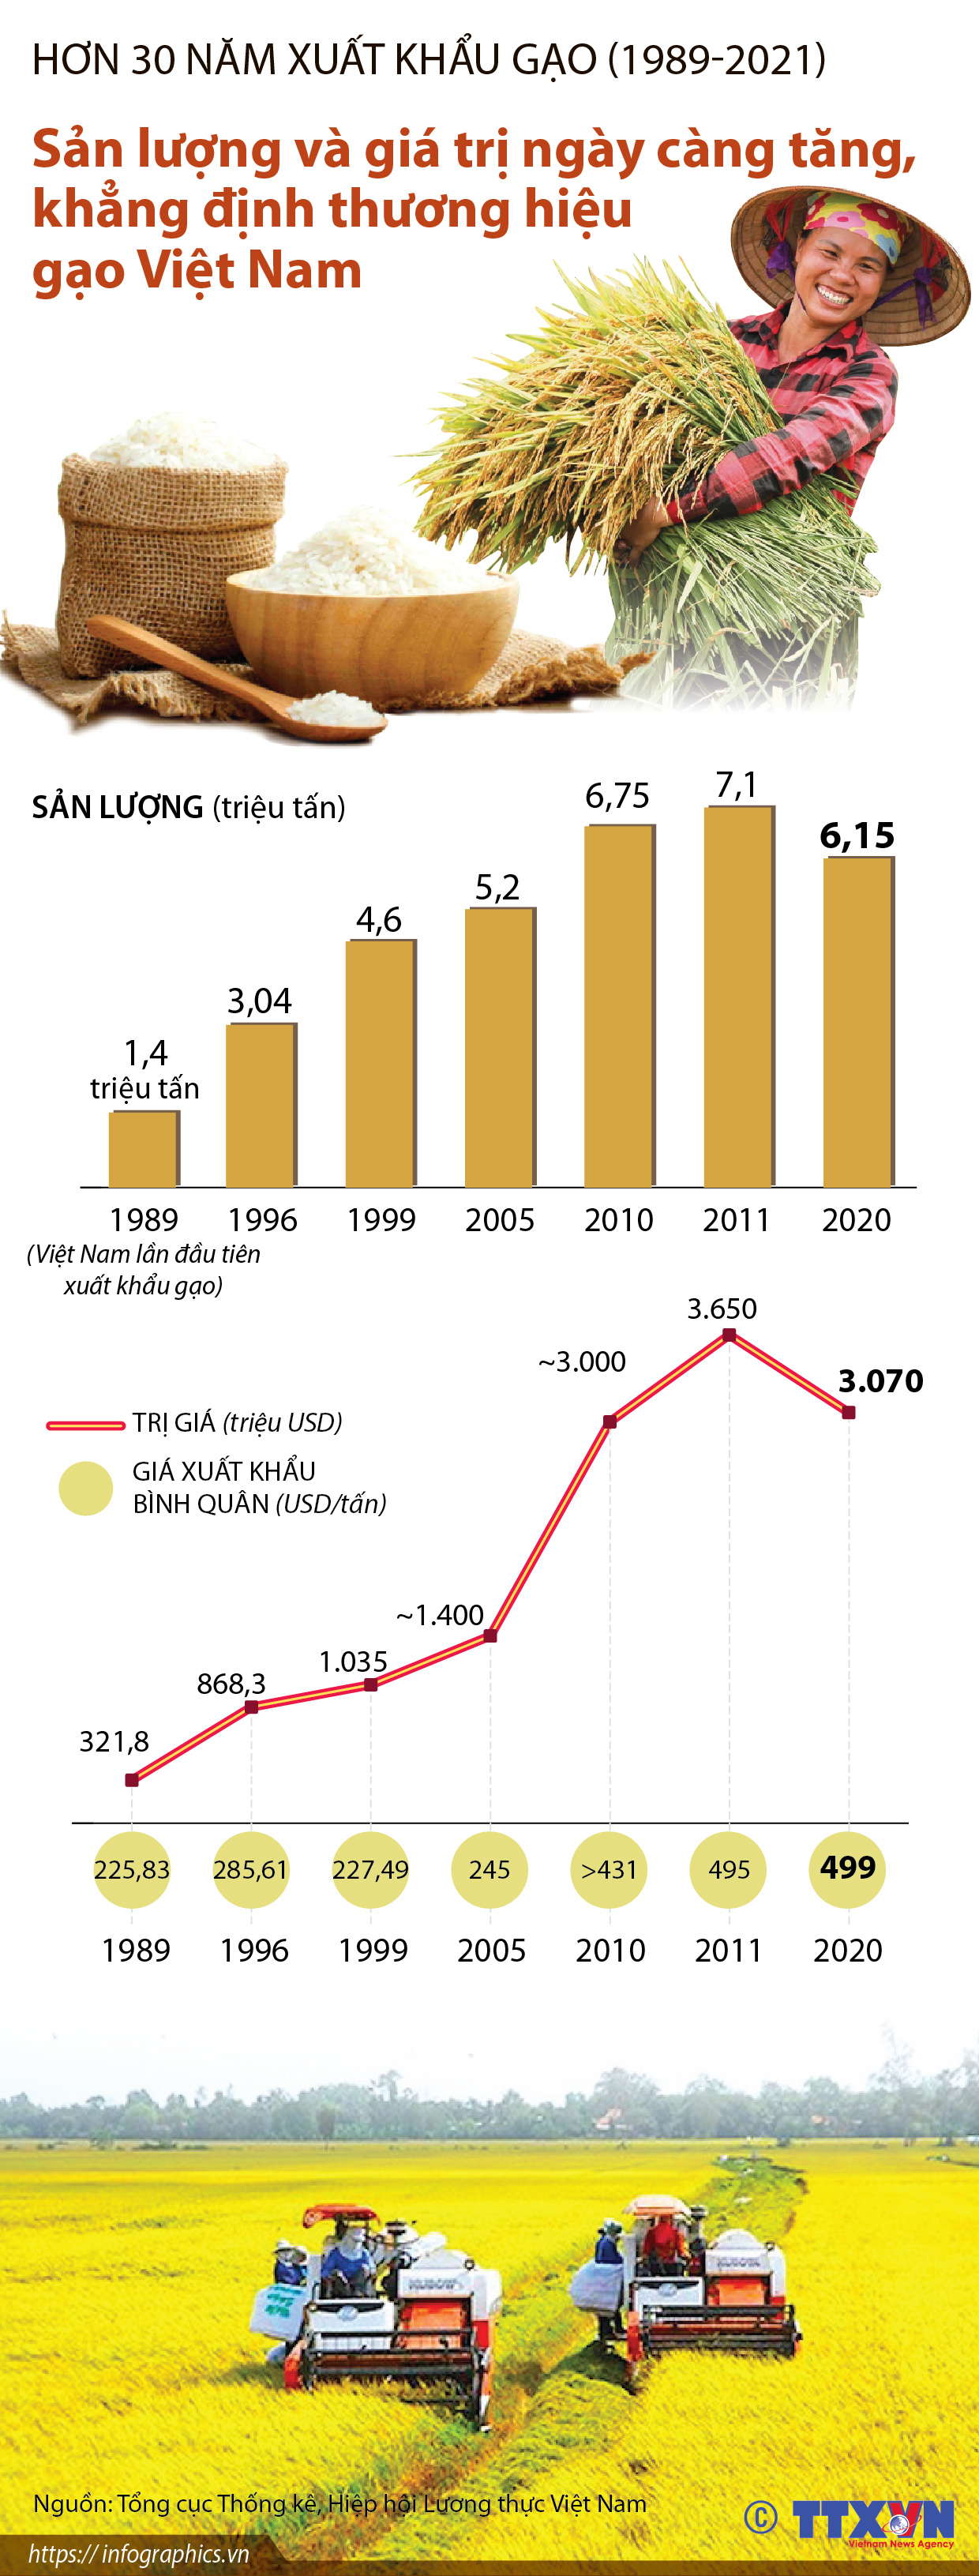 Hơn 30 năm xuất khẩu gạo (1989-2021): Khẳng định thương hiệu gạo Việt Nam